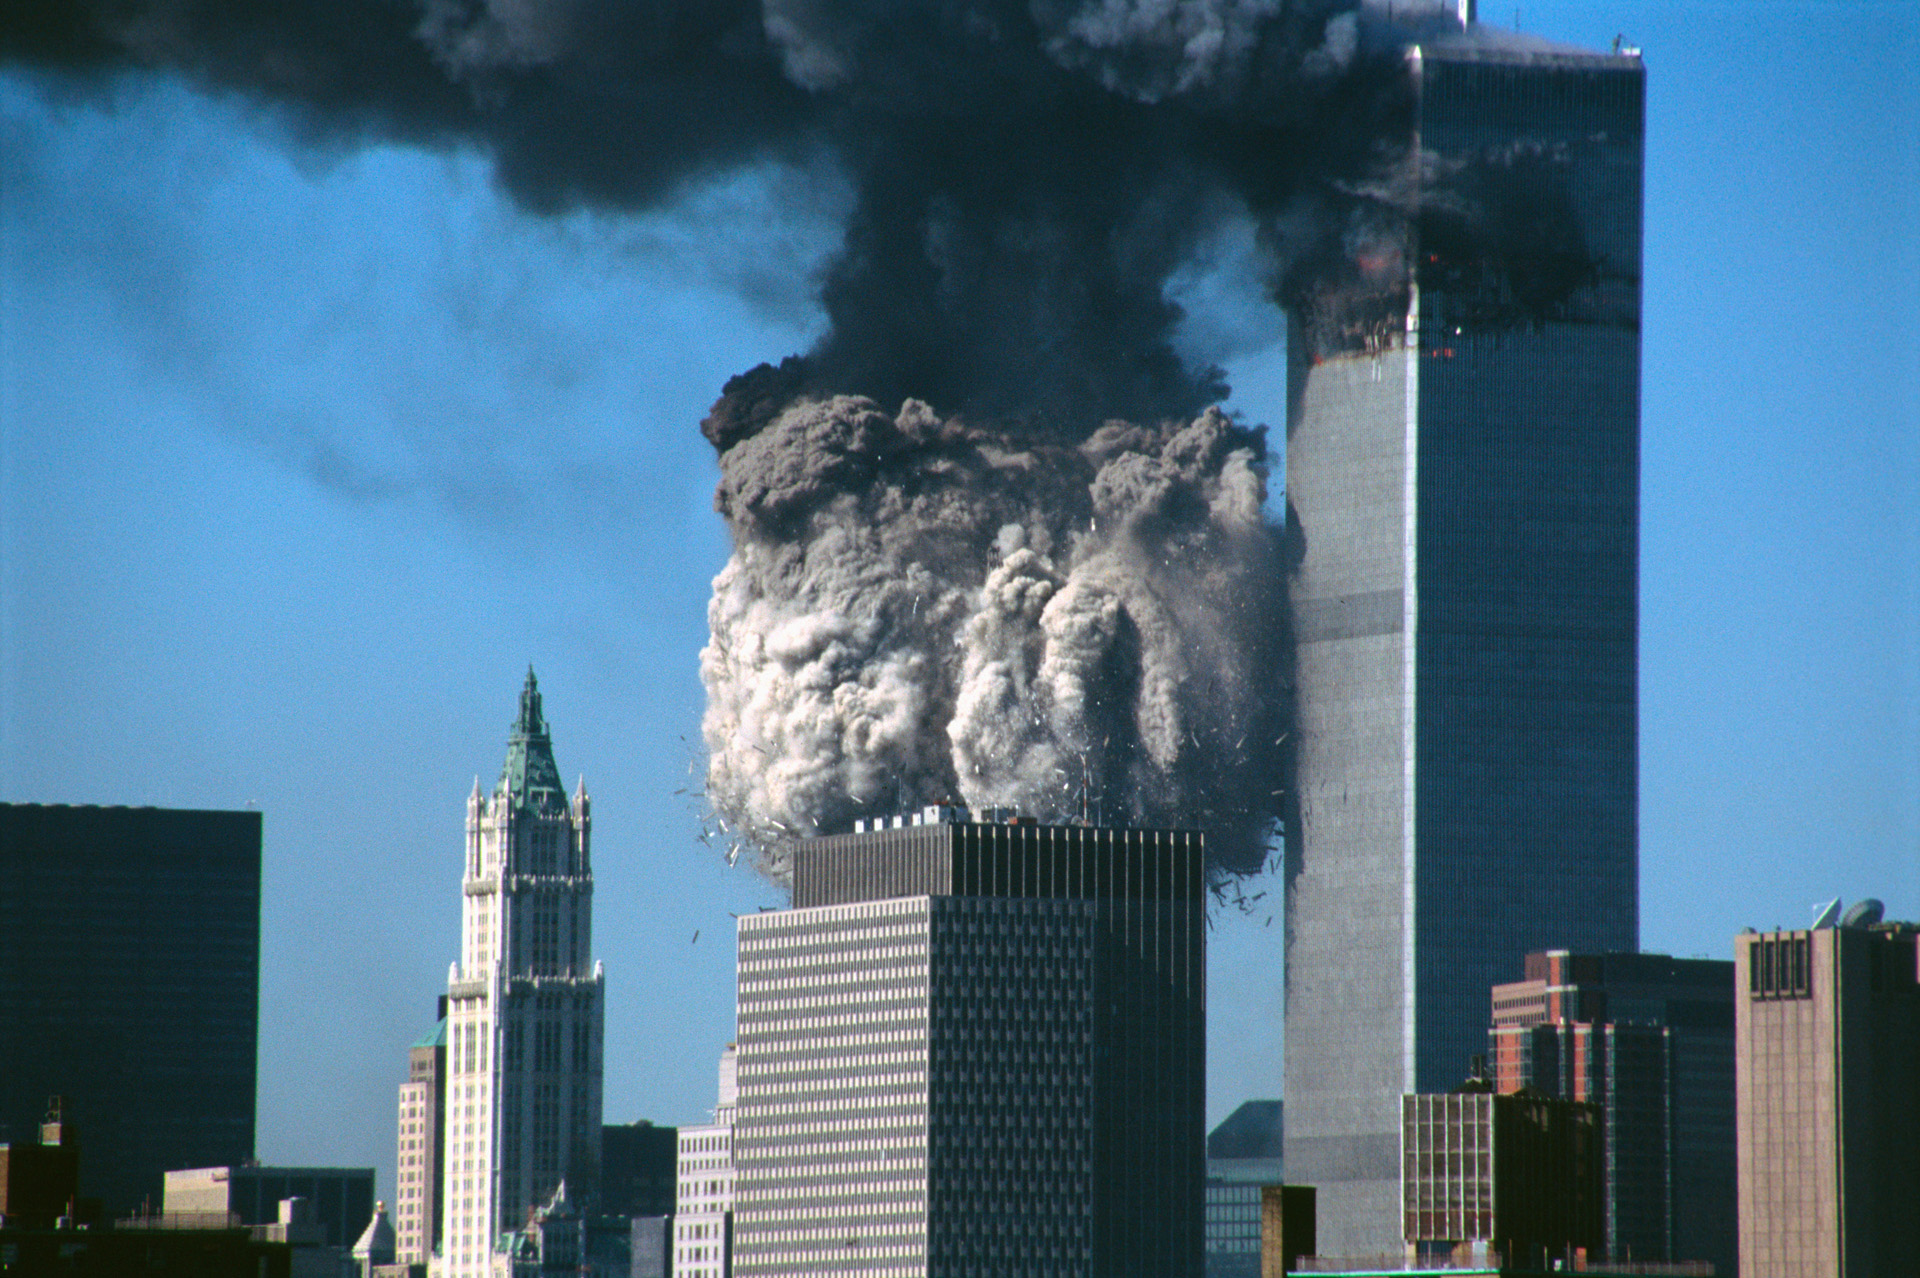 Сколько этажей было в башнях близнецах. Башни ВТЦ. Башни-Близнецы 11 сентября 2001. 2 Башни Близнецы в Нью Йорке. Башни Близнецы ВТЦ внутри.